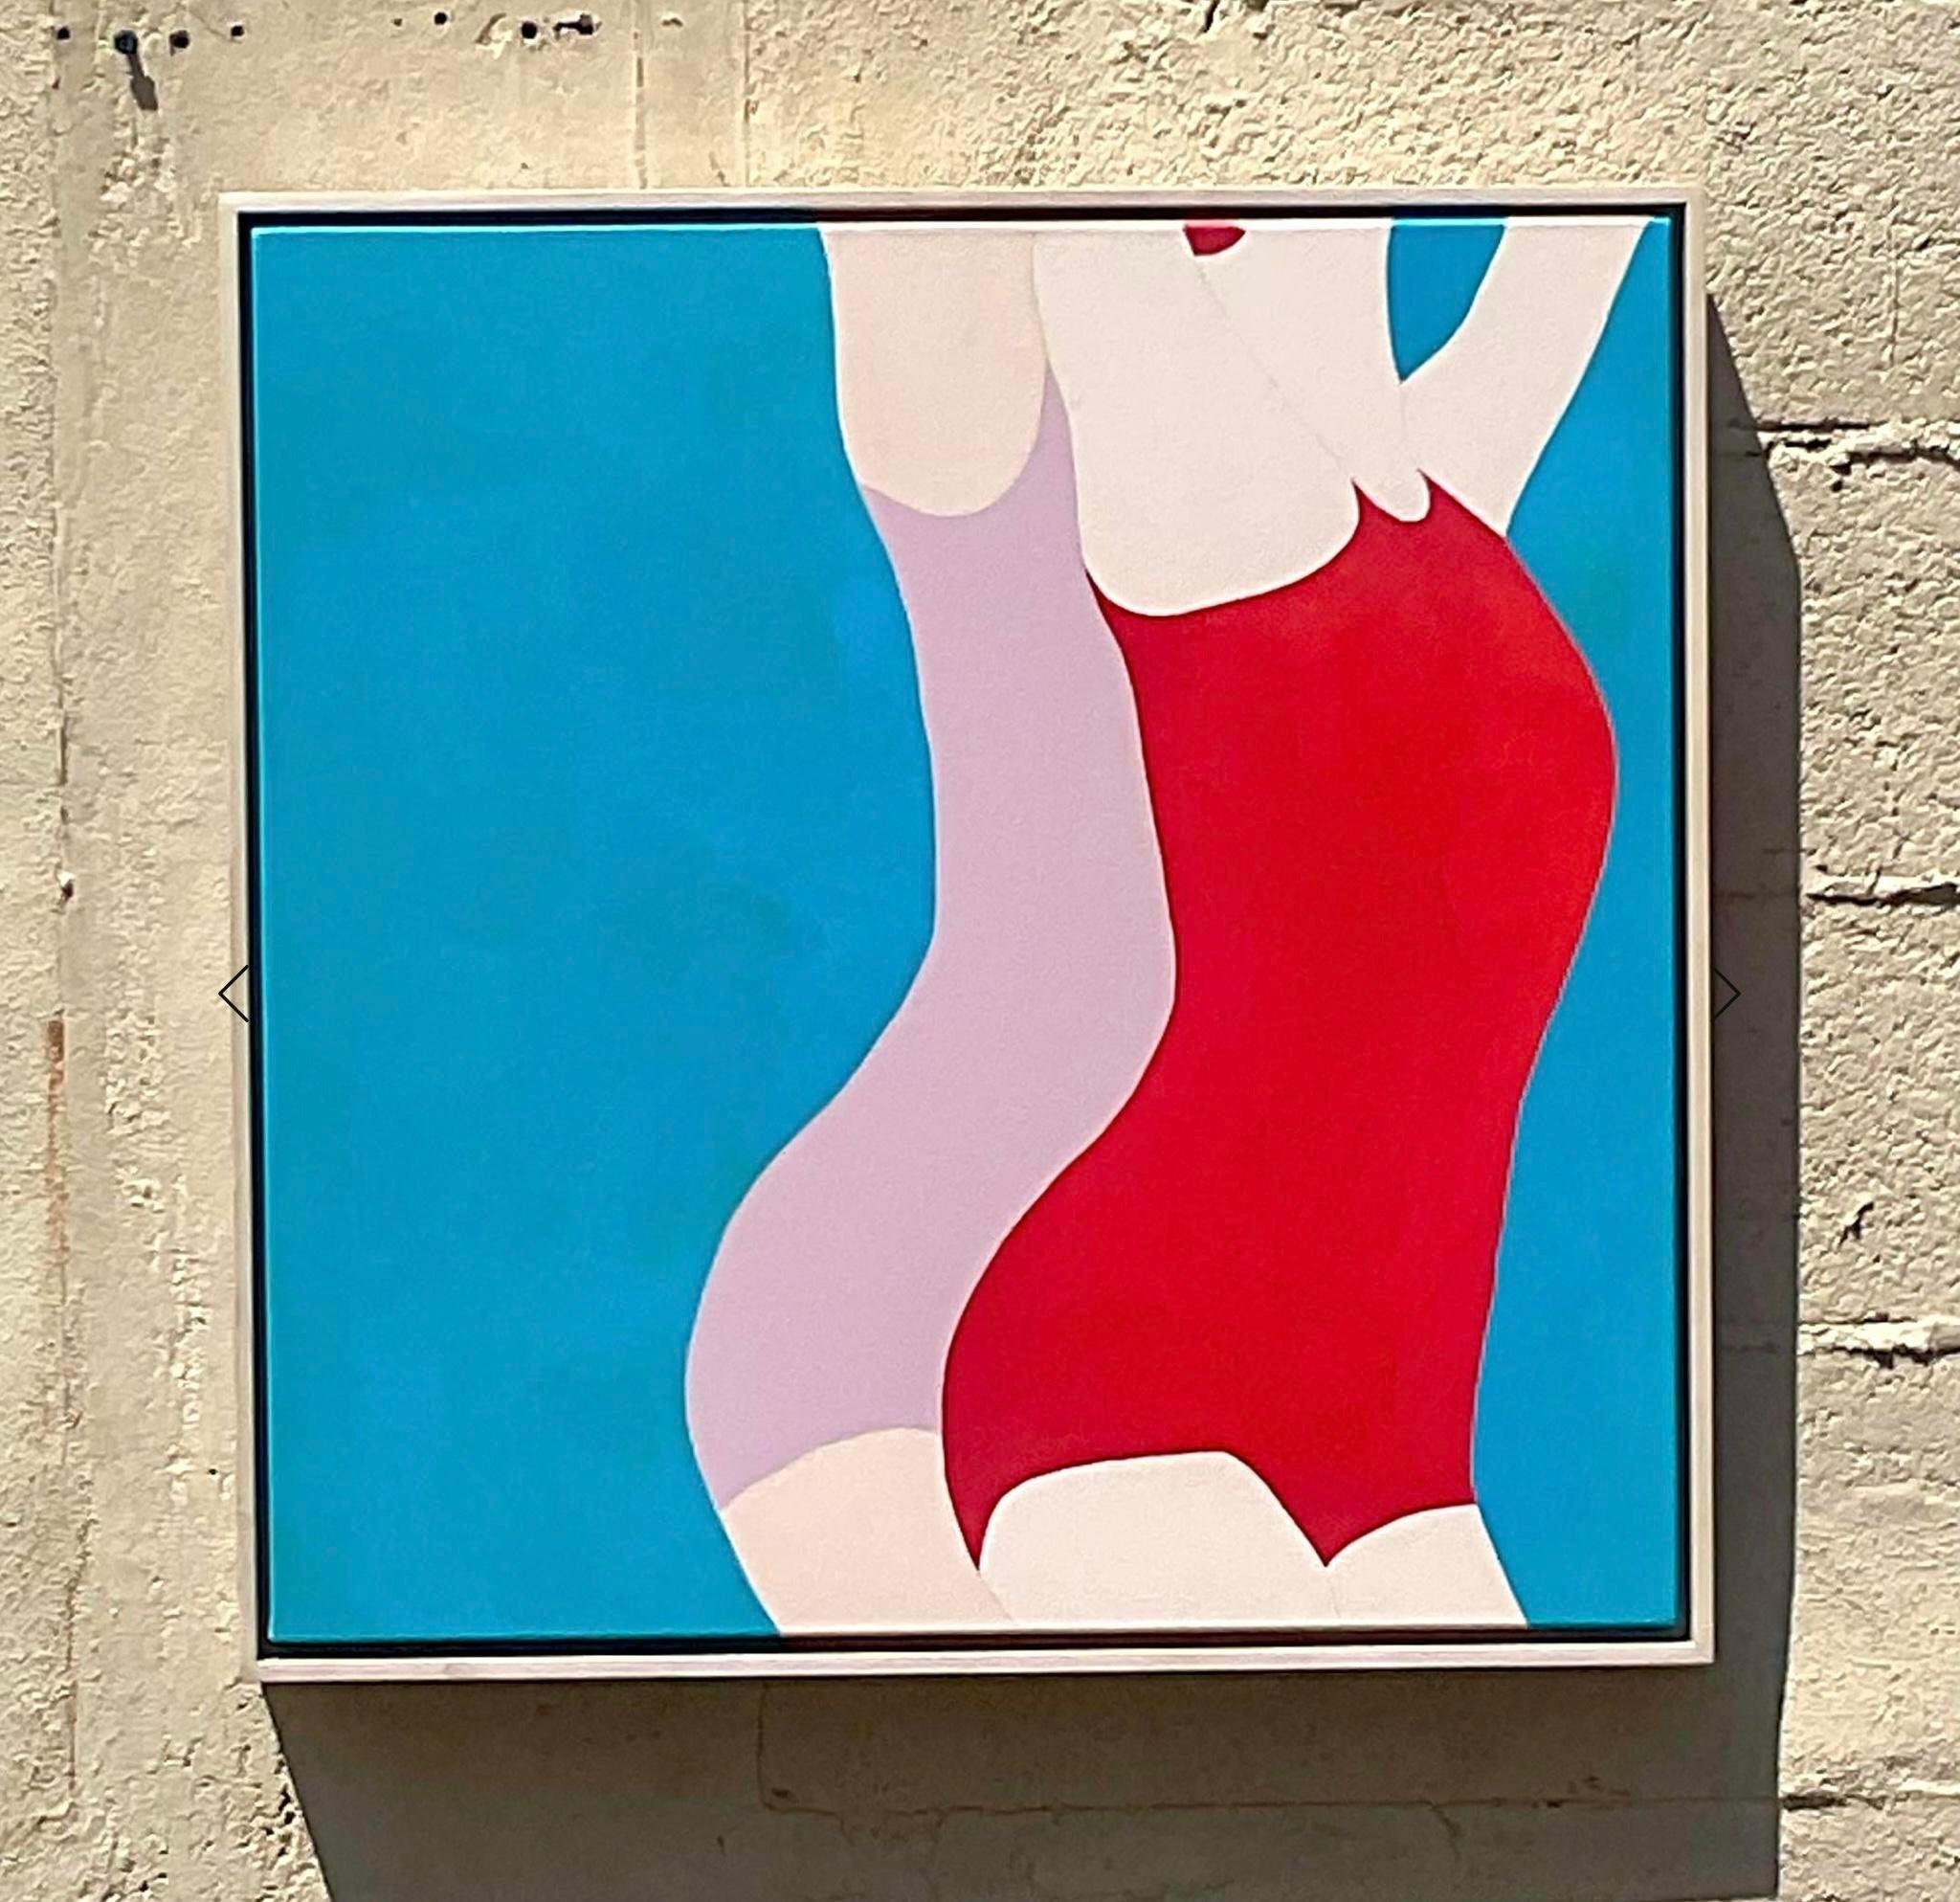 Tauchen Sie ein in die dynamische Welt der zeitgenössischen Kunst mit Melo Porters eindrucksvollem neoexpressionistischem Acryl-Farbblock-Figurenbild. Mit kühnen Strichen und leuchtenden Farben verkörpert dieses Werk die Essenz der amerikanischen